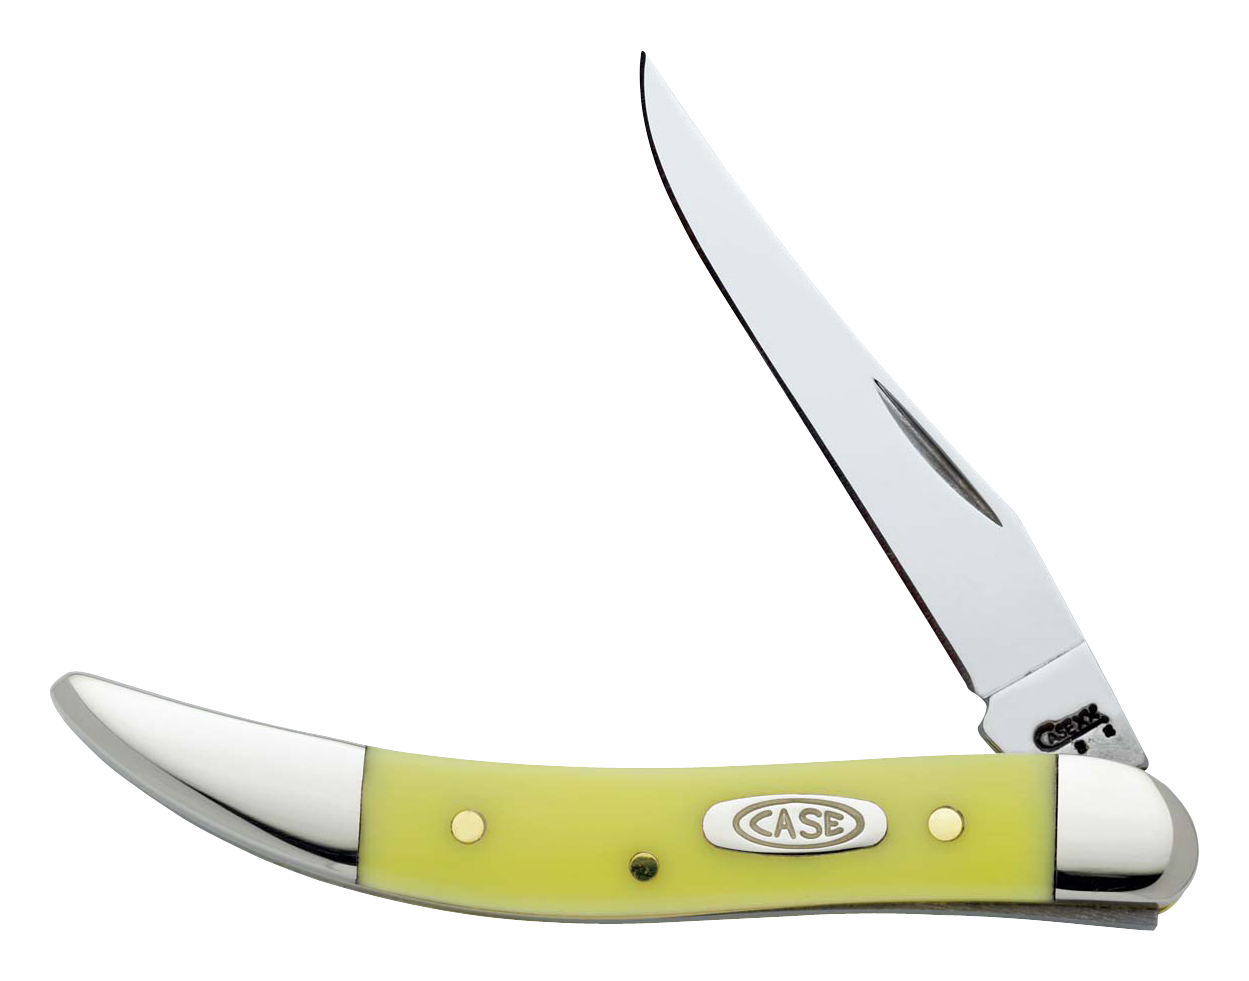 VINTAGE POCKET KNIFE HAMMER BRAND 2 Blade SILVER Tone Chrome OLD